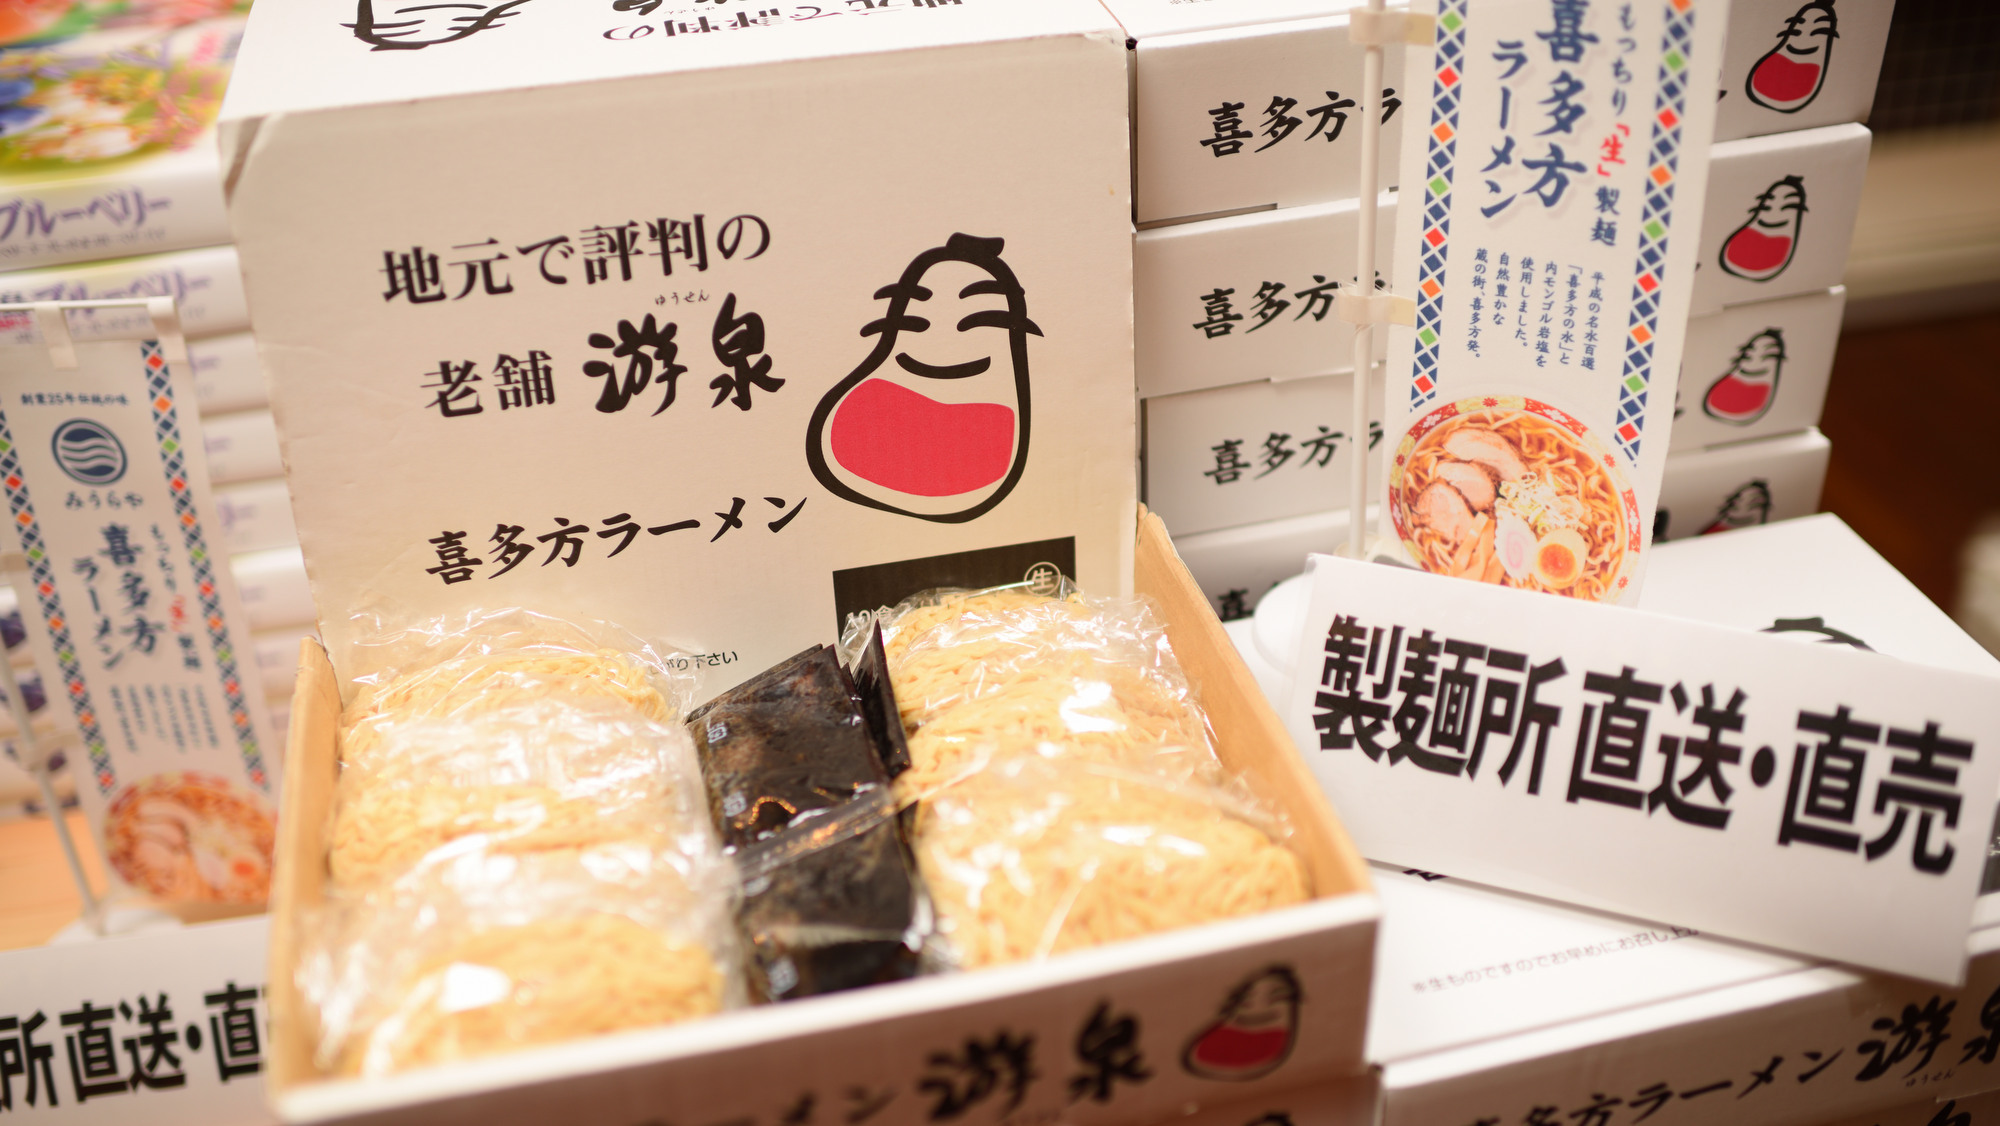 【お土産処・会津のれん】日本三大ラーメンの1つ喜多方ラーメンお土産に最適です。